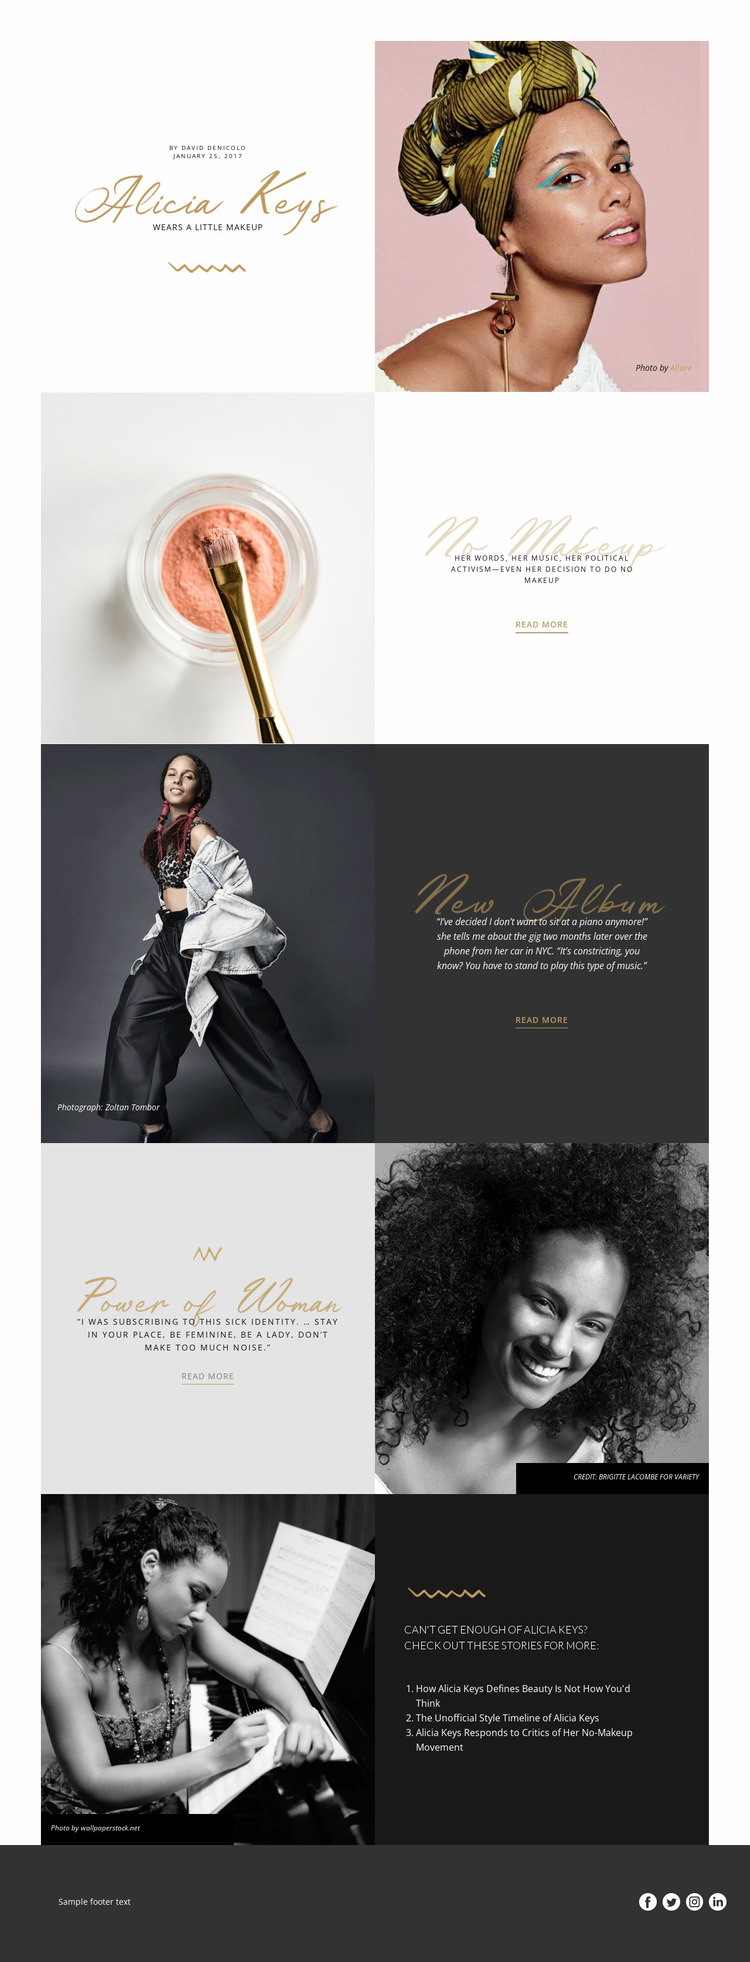 Alicia Keys Website Mockup